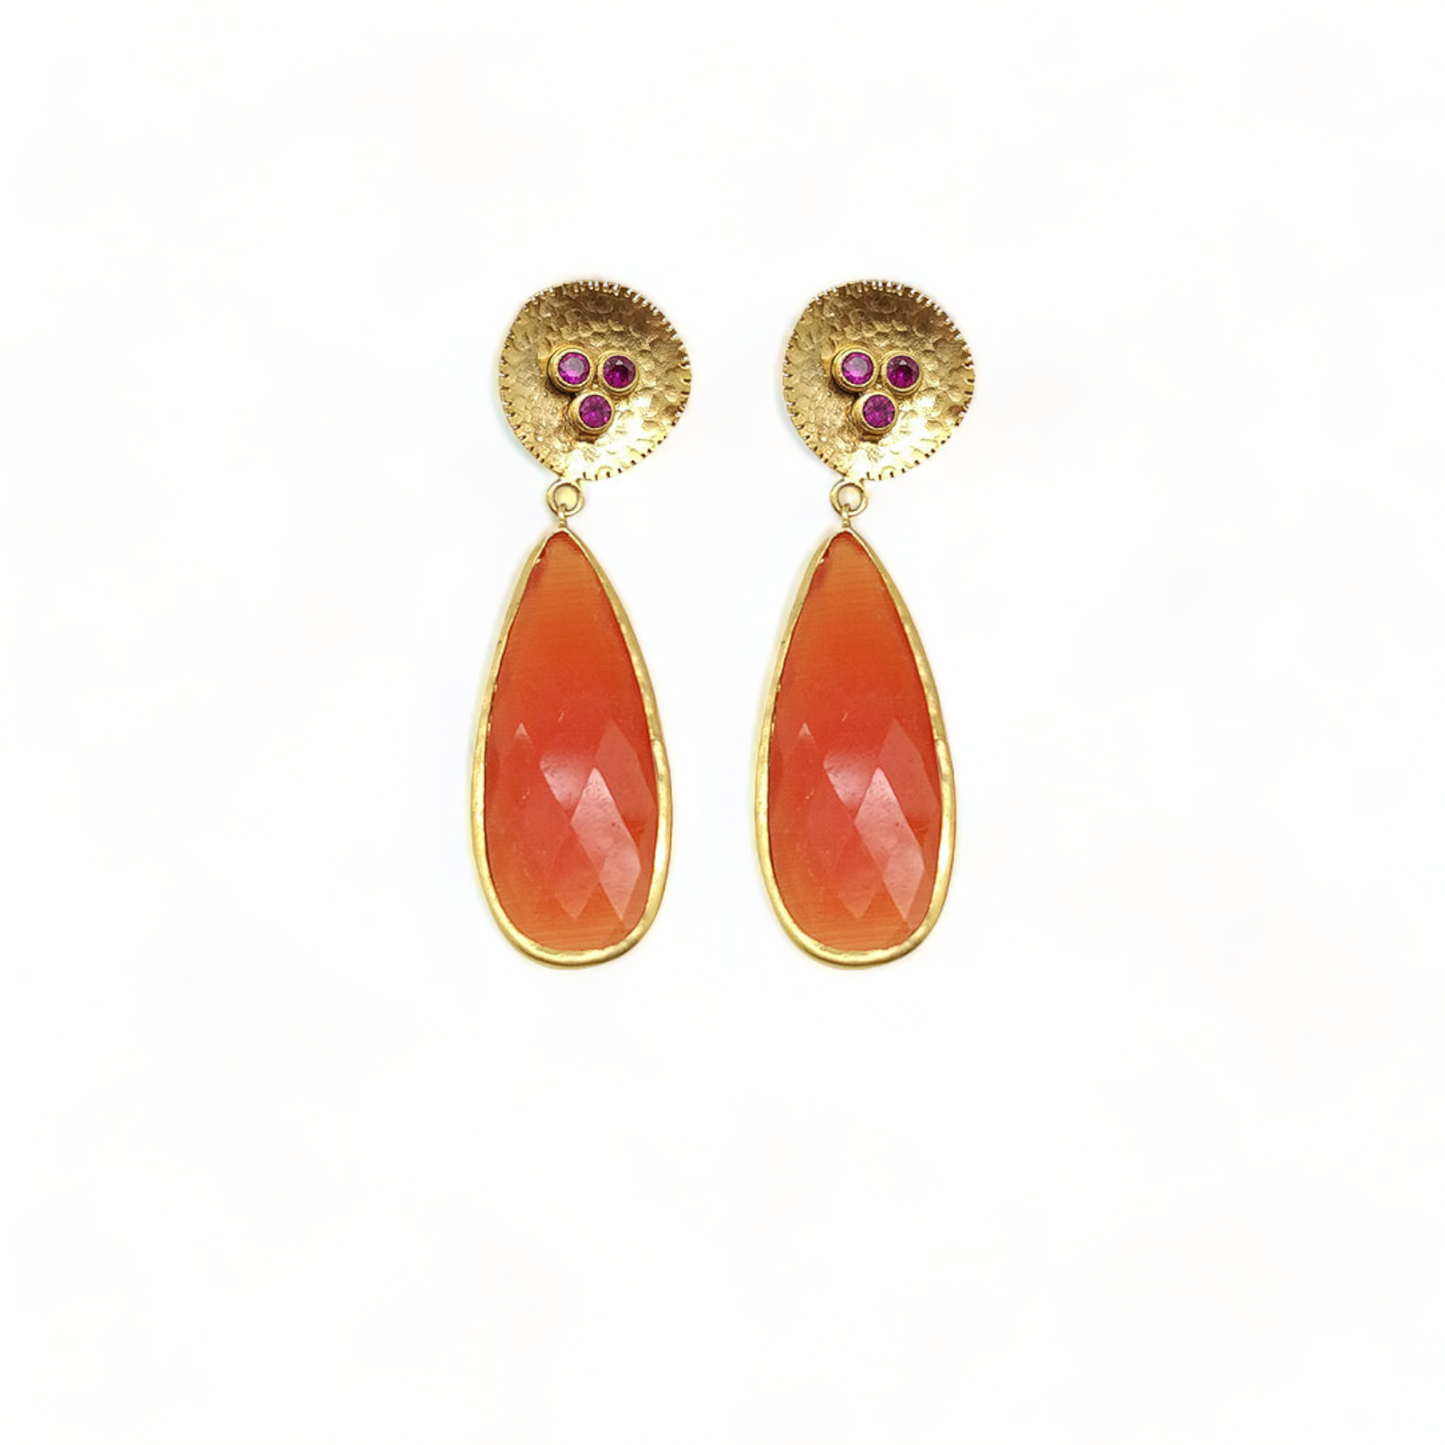 Handmade Orange Cat's eye Earrings with Ruby CZ Top - Gold Plated Statement Jewelry - shopzeyzey